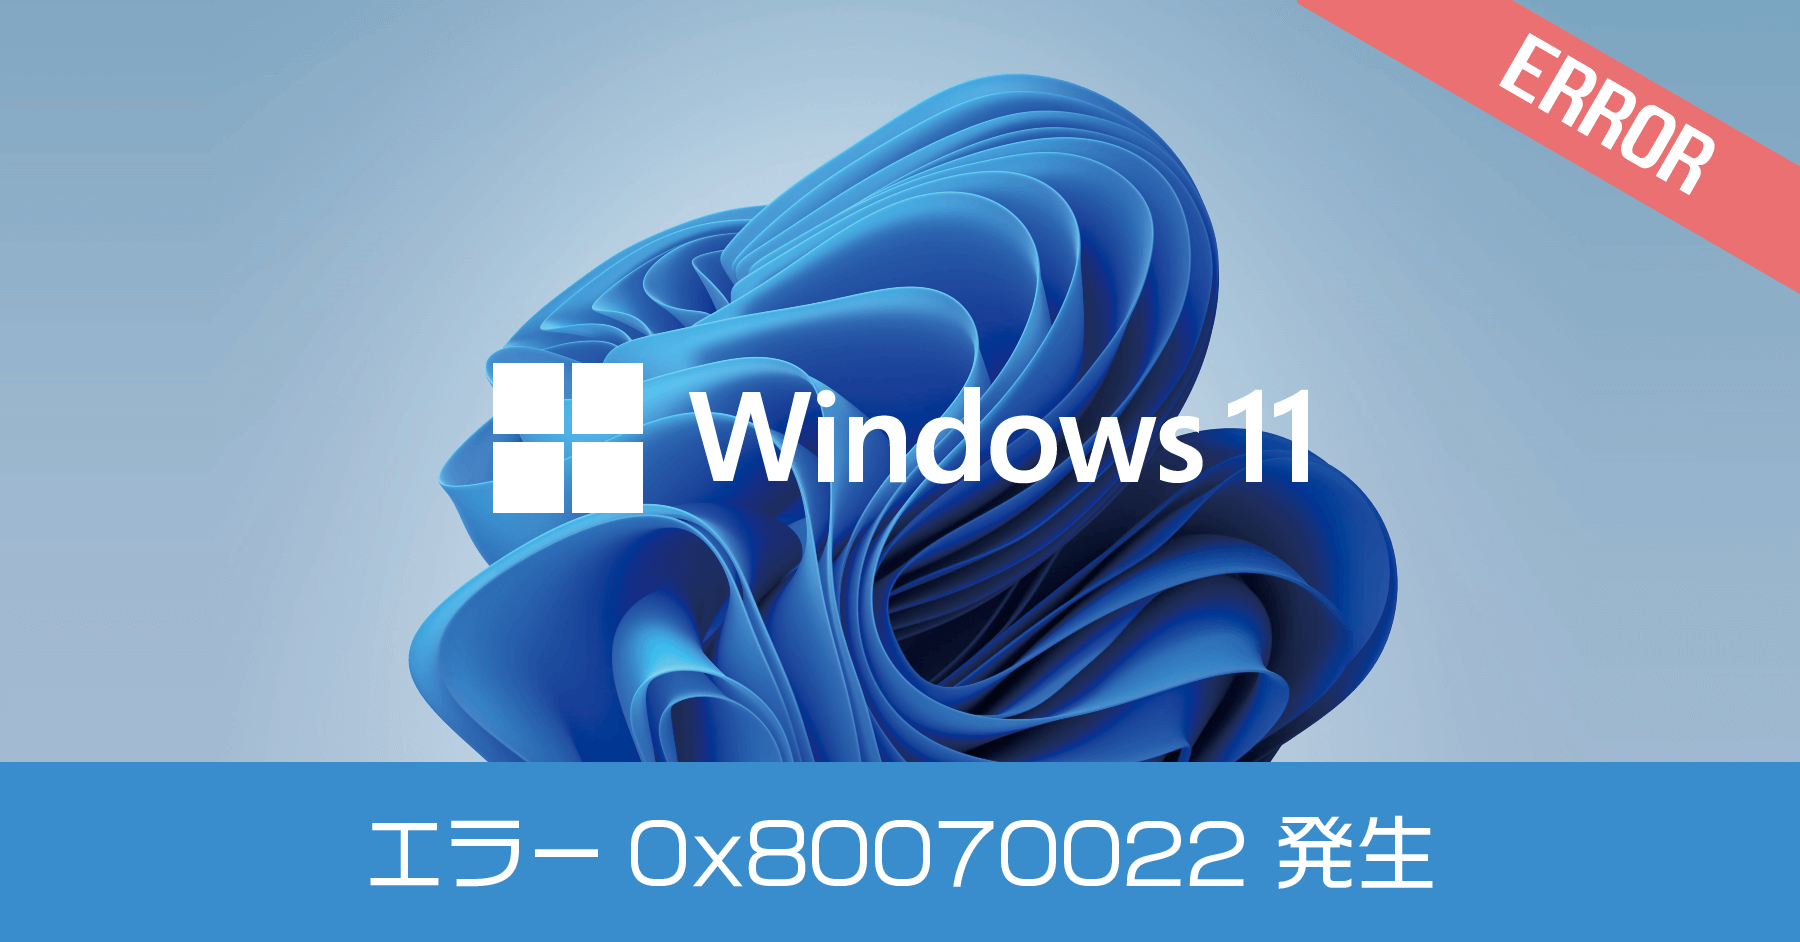 Windows 11 セットアップで「必要なファイルをインストールできません」とエラー 0X80070022 が出たけど解決した話